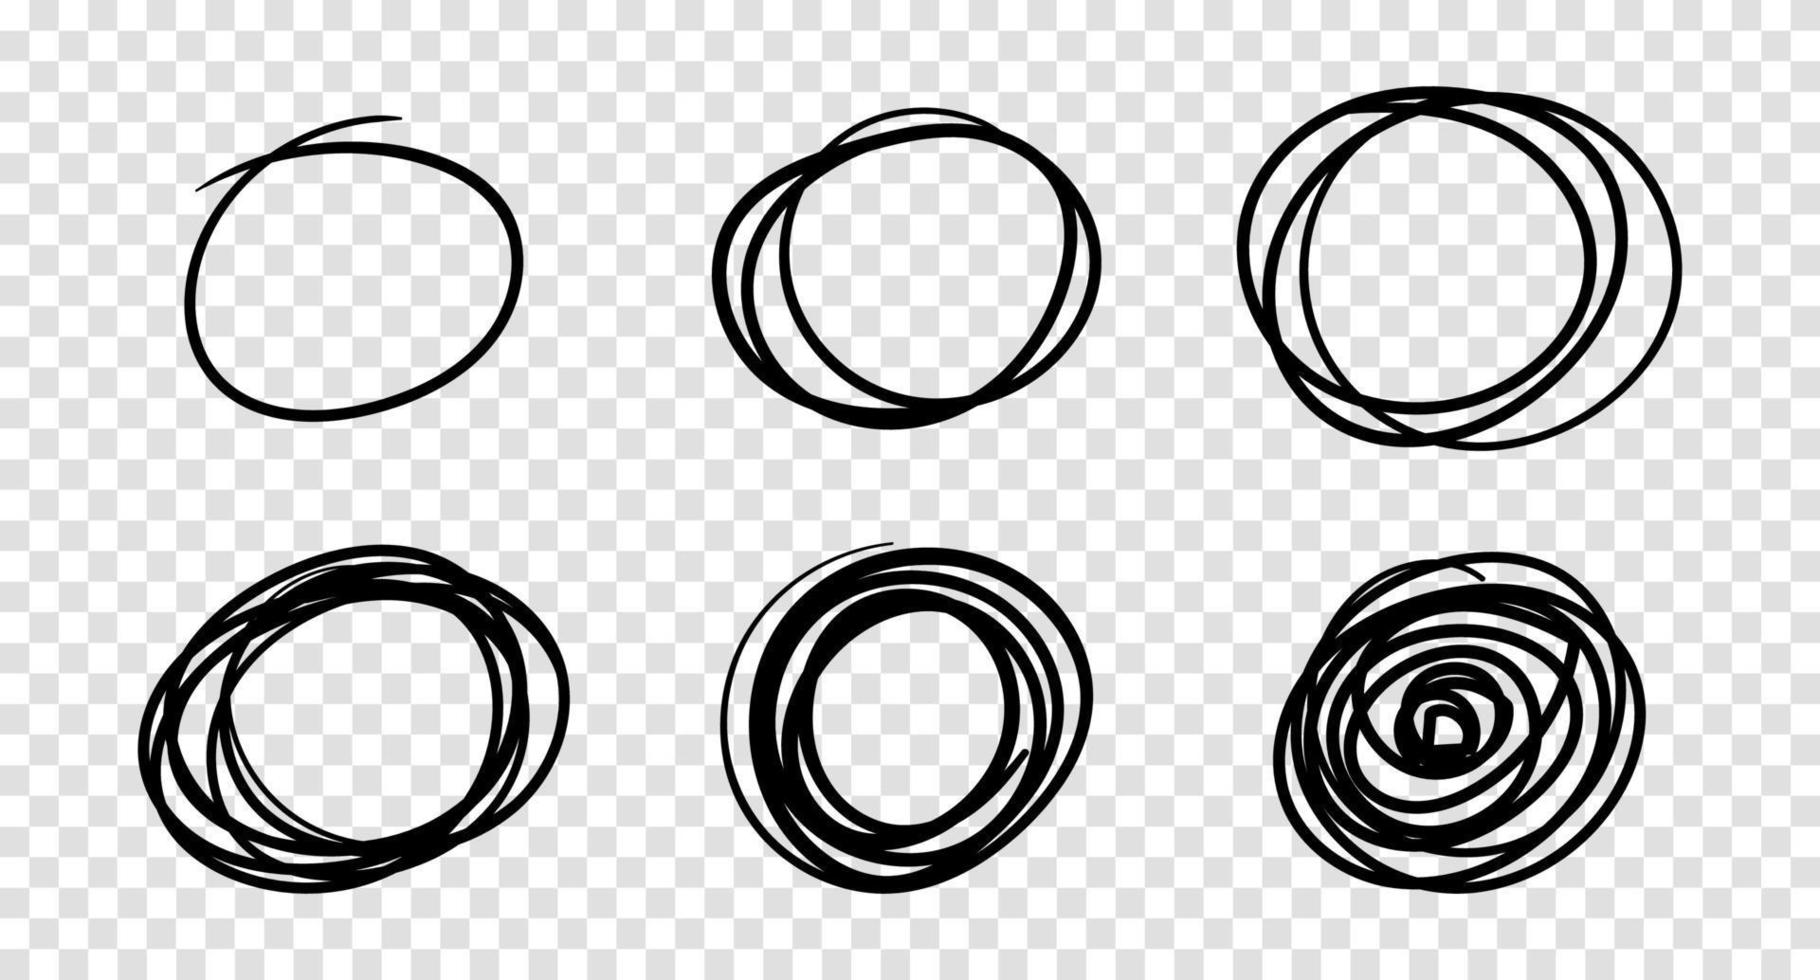 círculos de garabatos dibujados a mano, elementos de diseño de logotipo vectorial vector